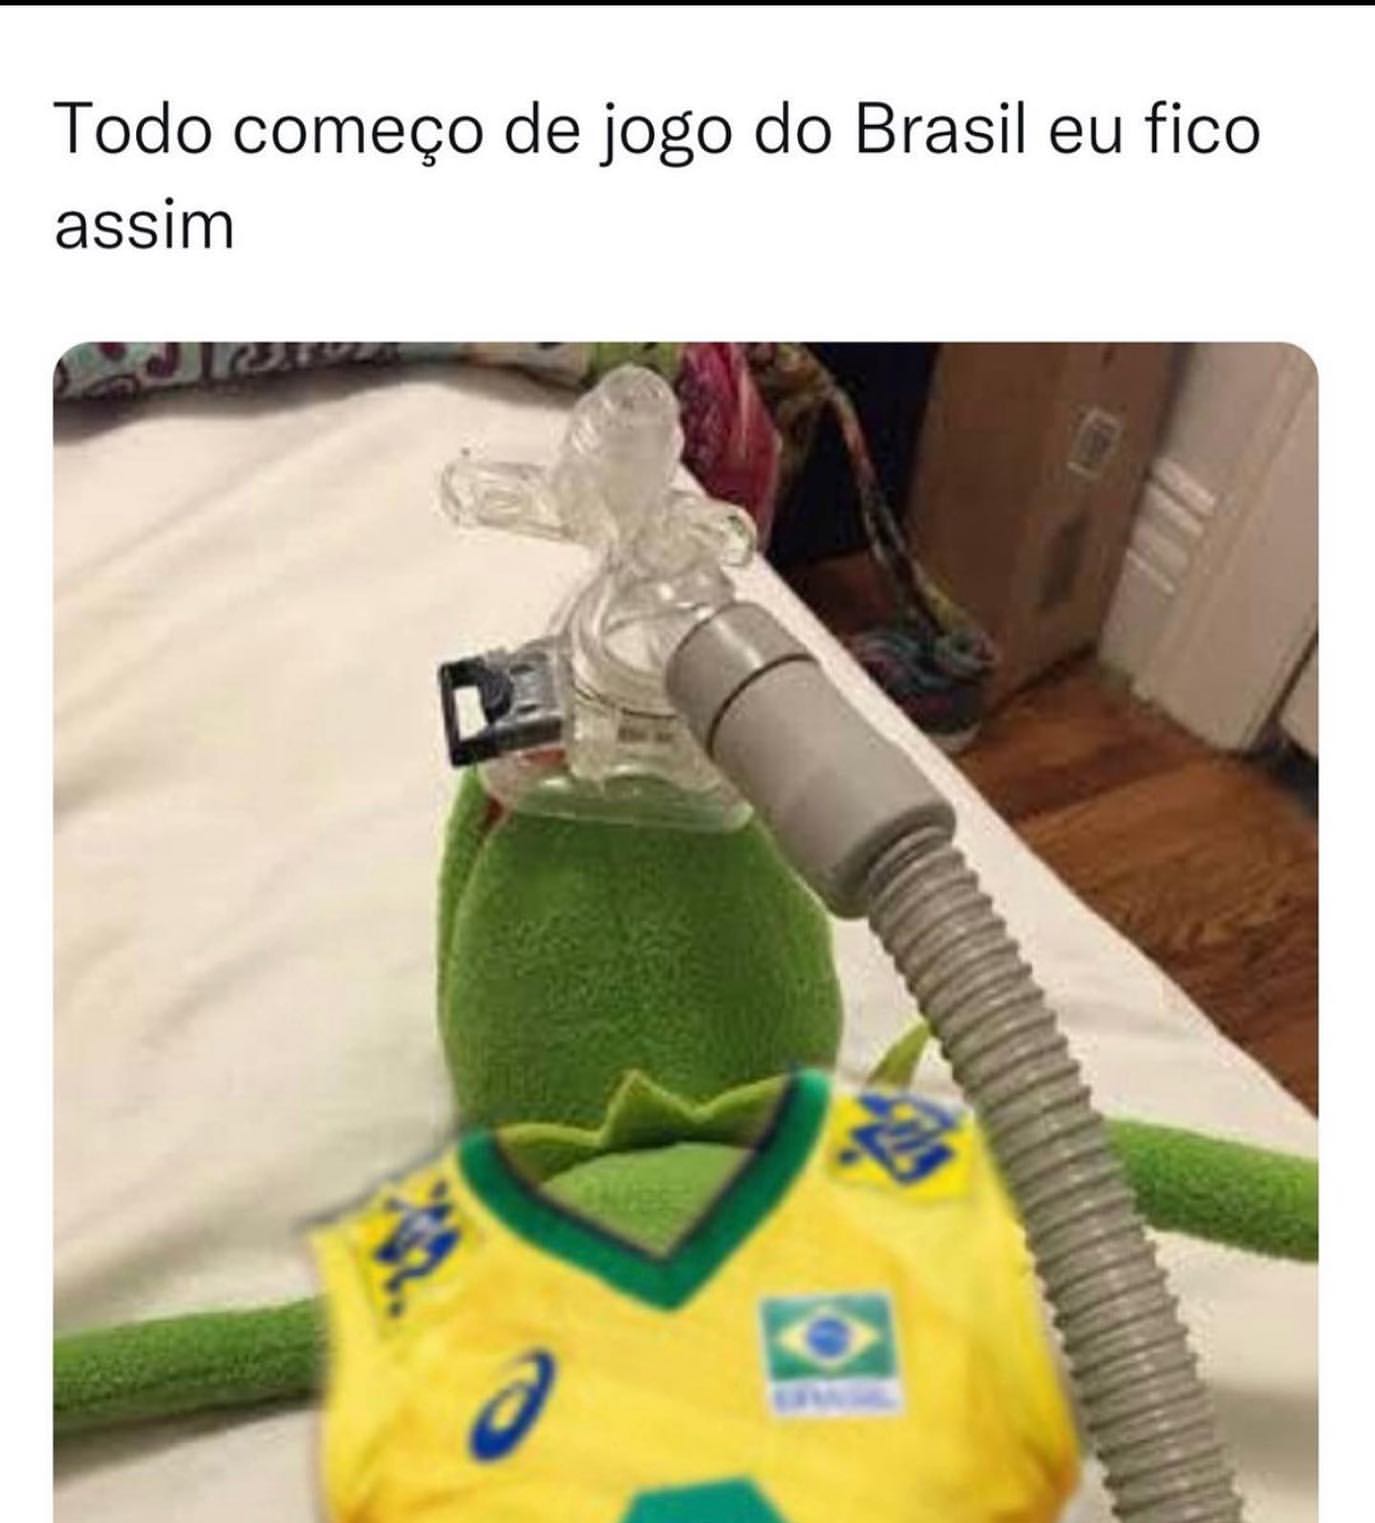 Todo começo de jogo do Brasil eu fico assim.